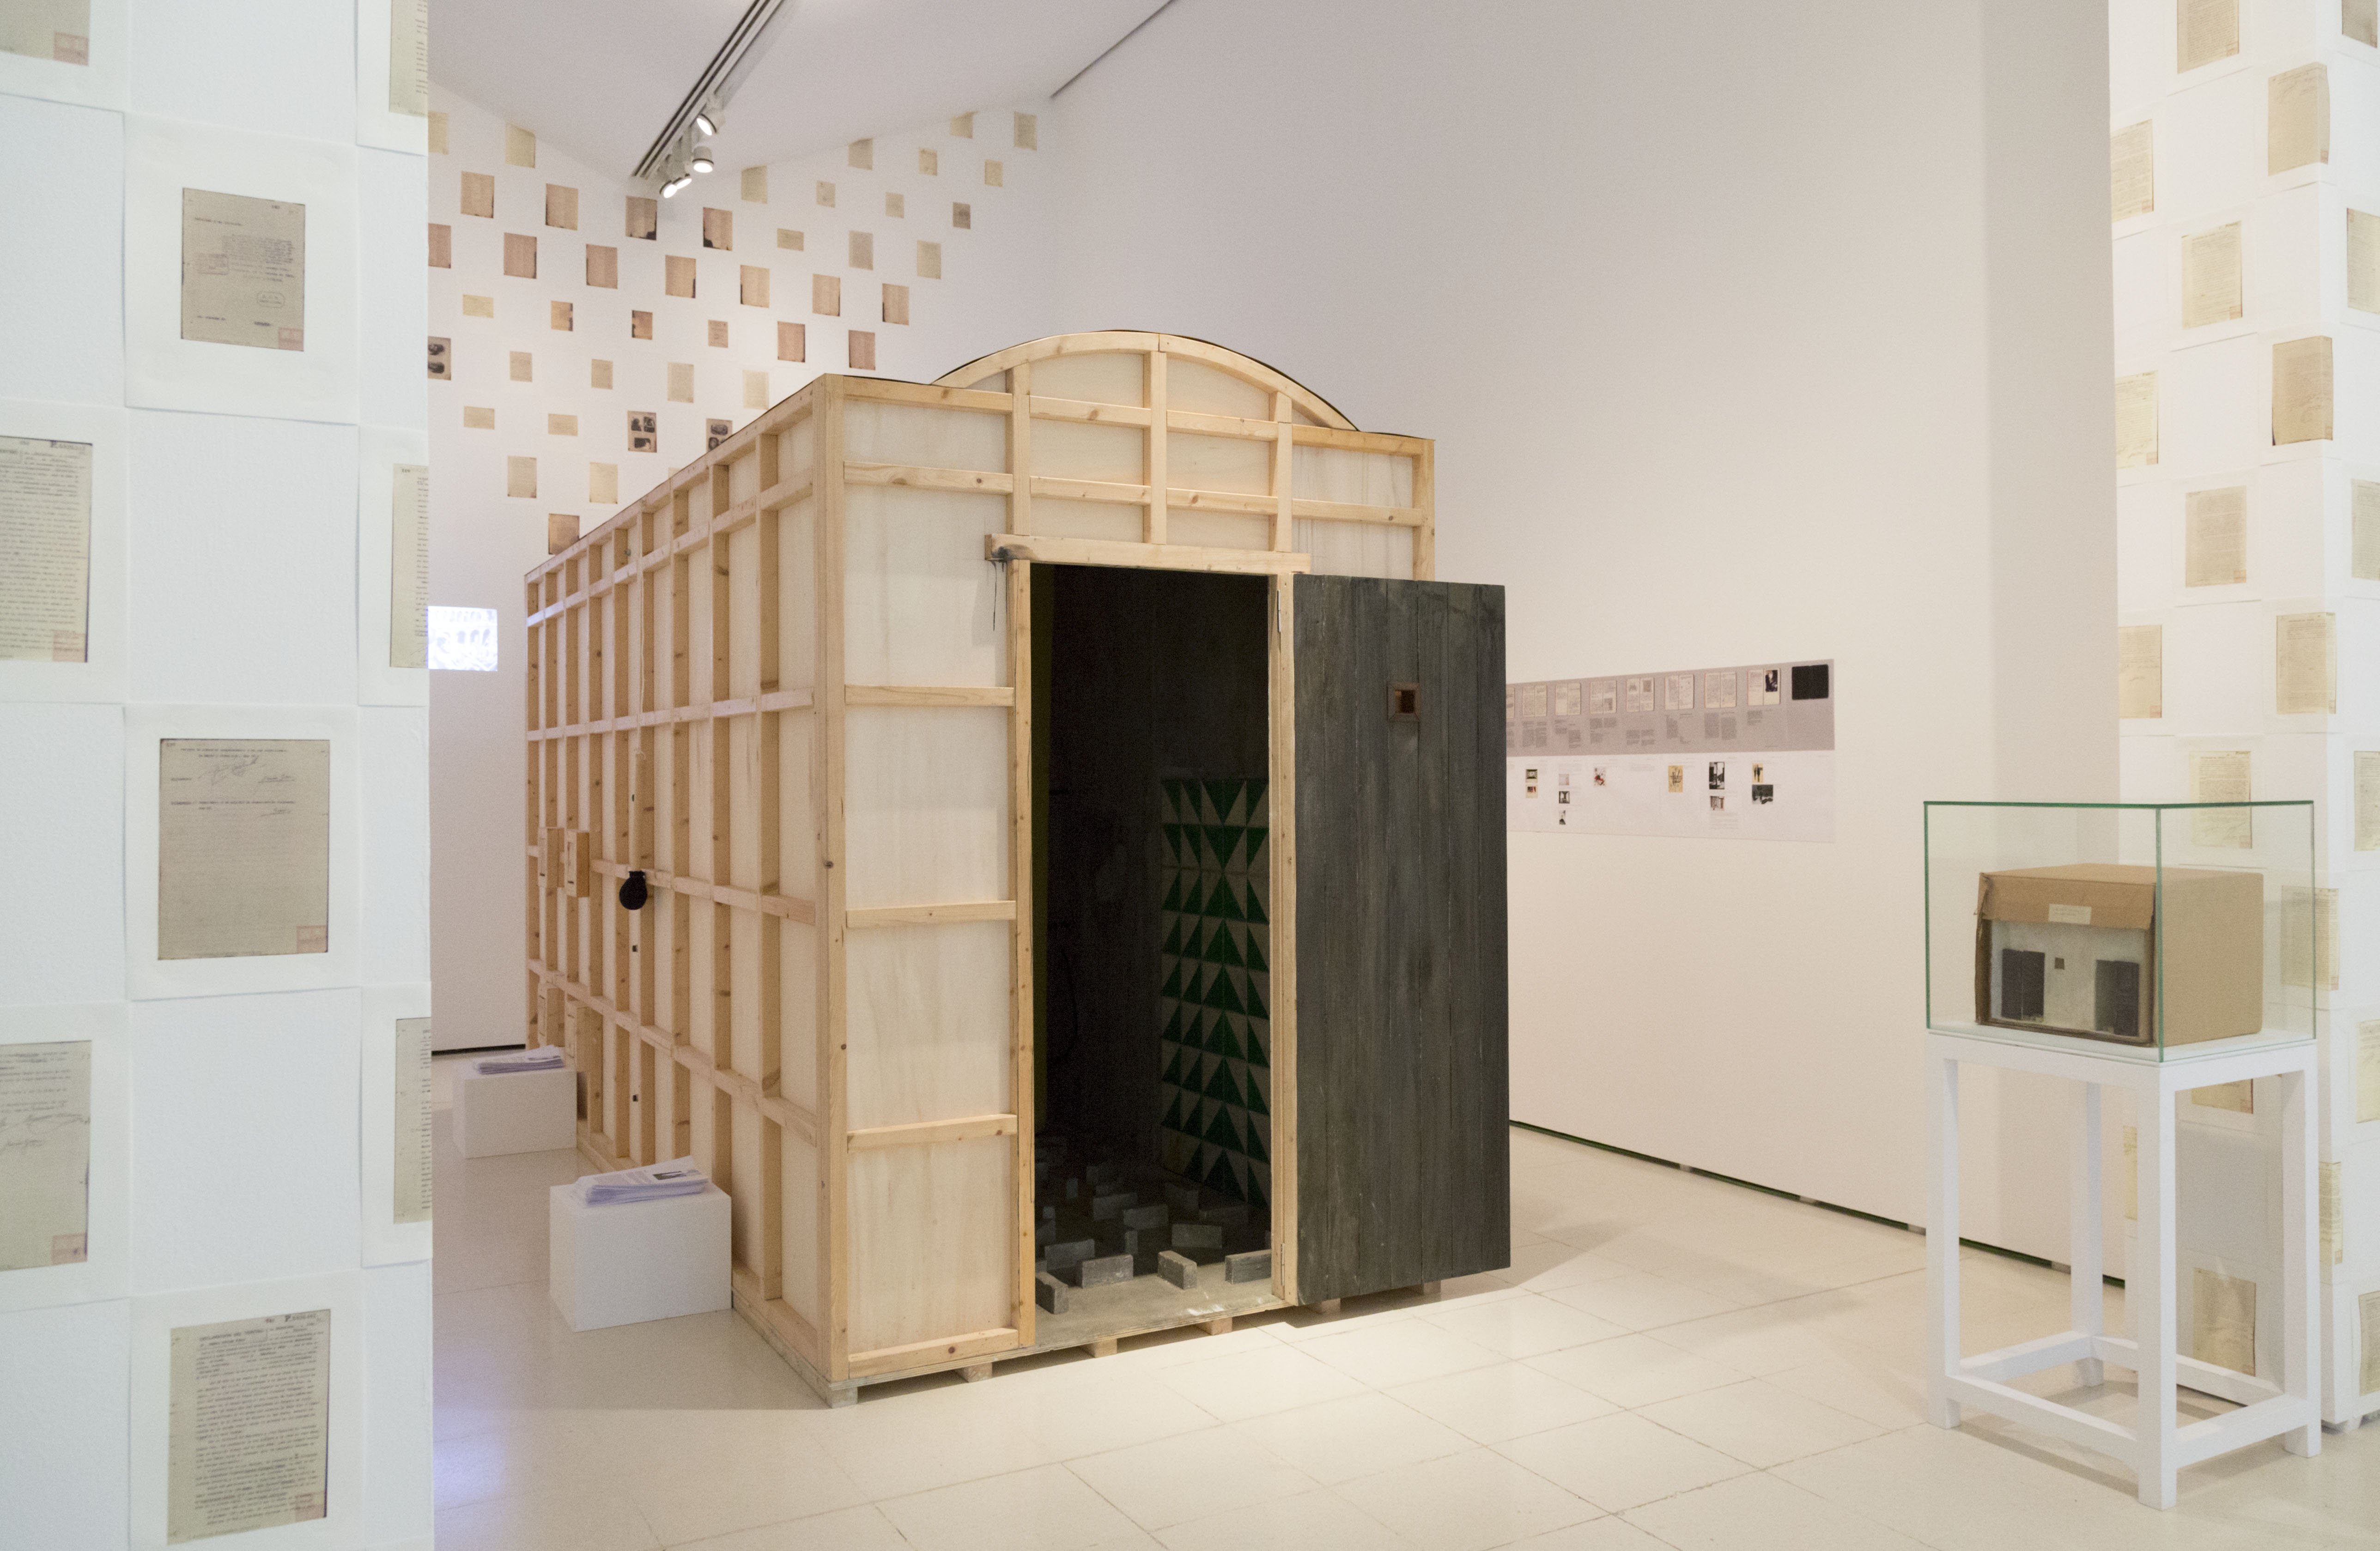 'Habitació': quan l'art esdevé tortura, a les txekes